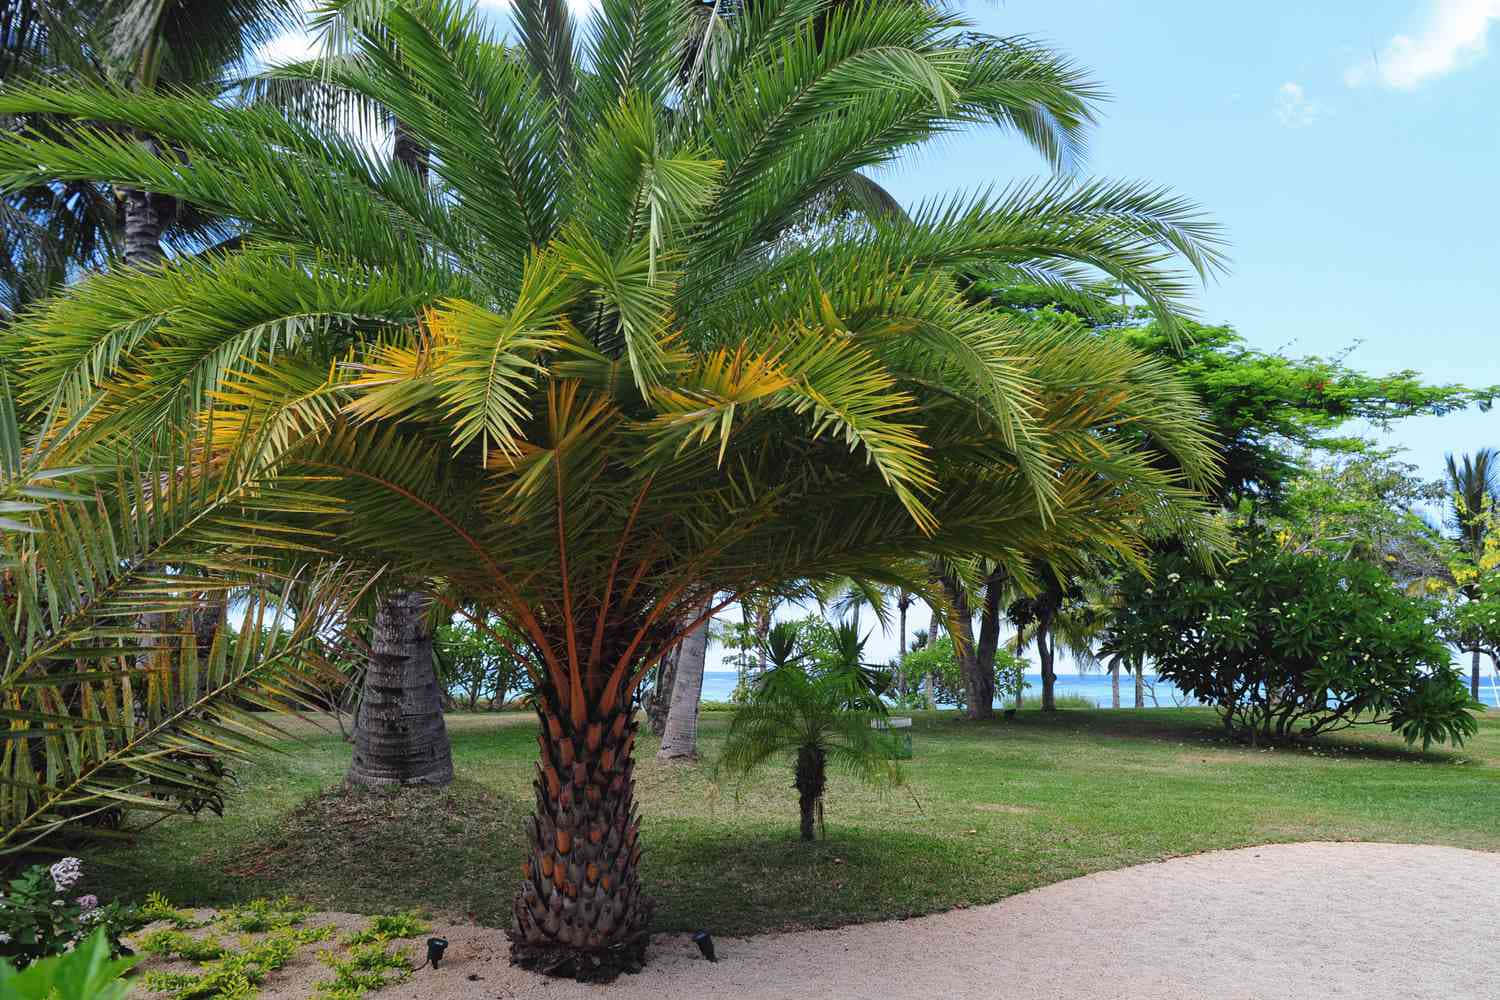 Sommerlichetage Verbracht In Der Nähe Einer Kokosnussgefüllten Palme.